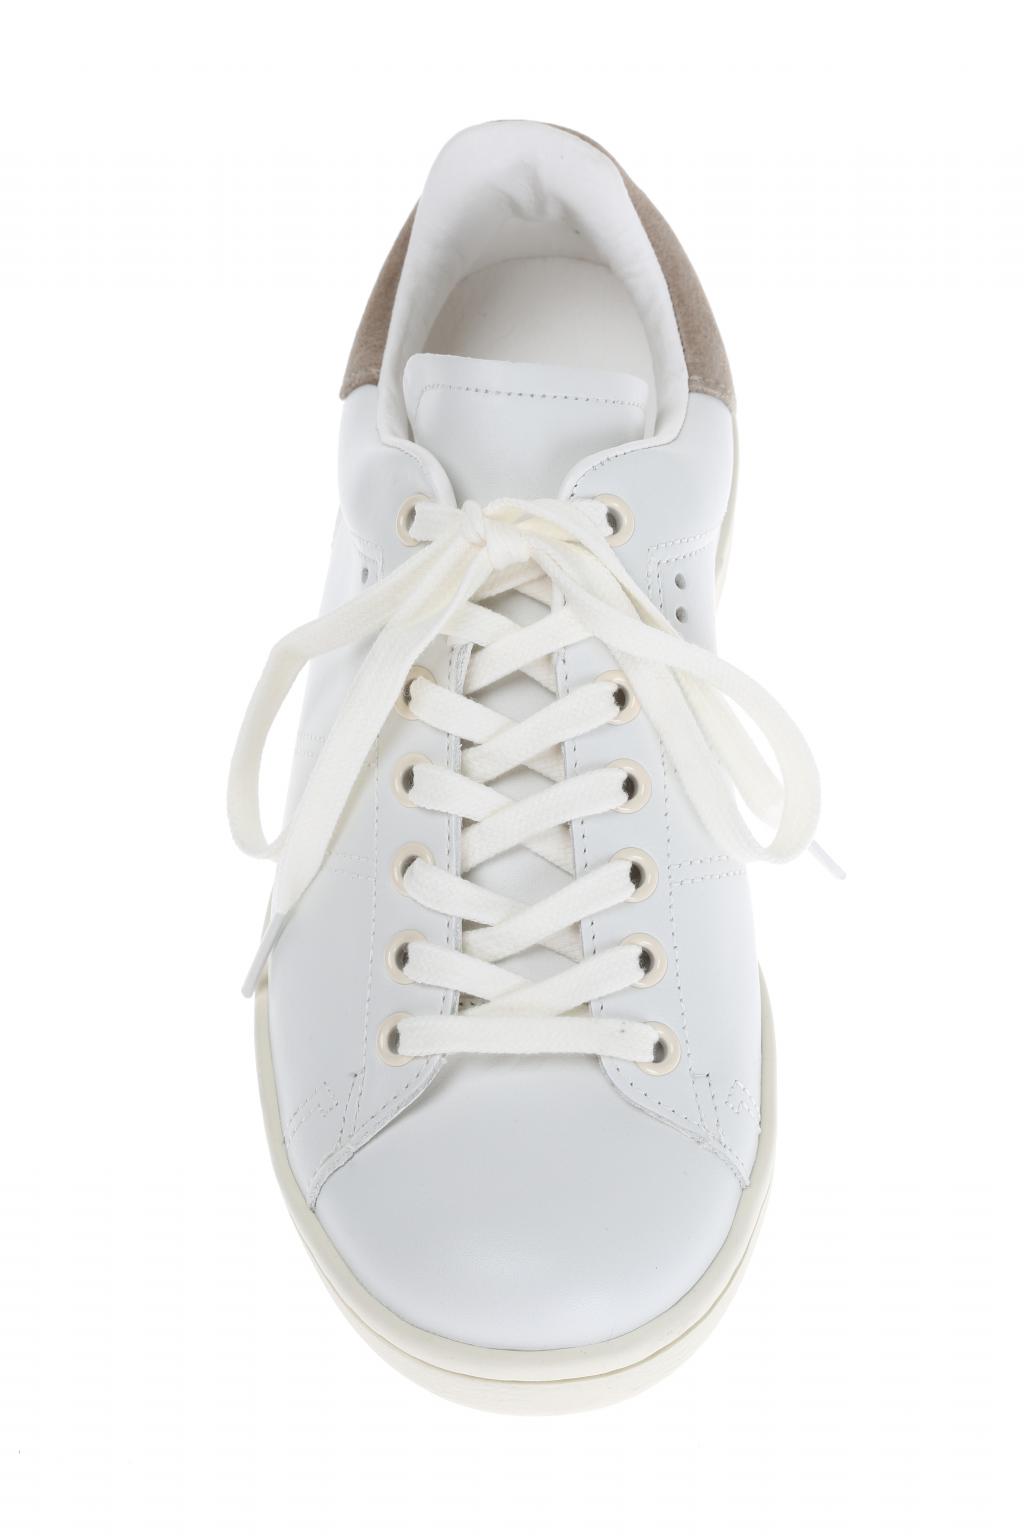 White Leather 'Bart' Sneakers Etoile - Vitkac Italy